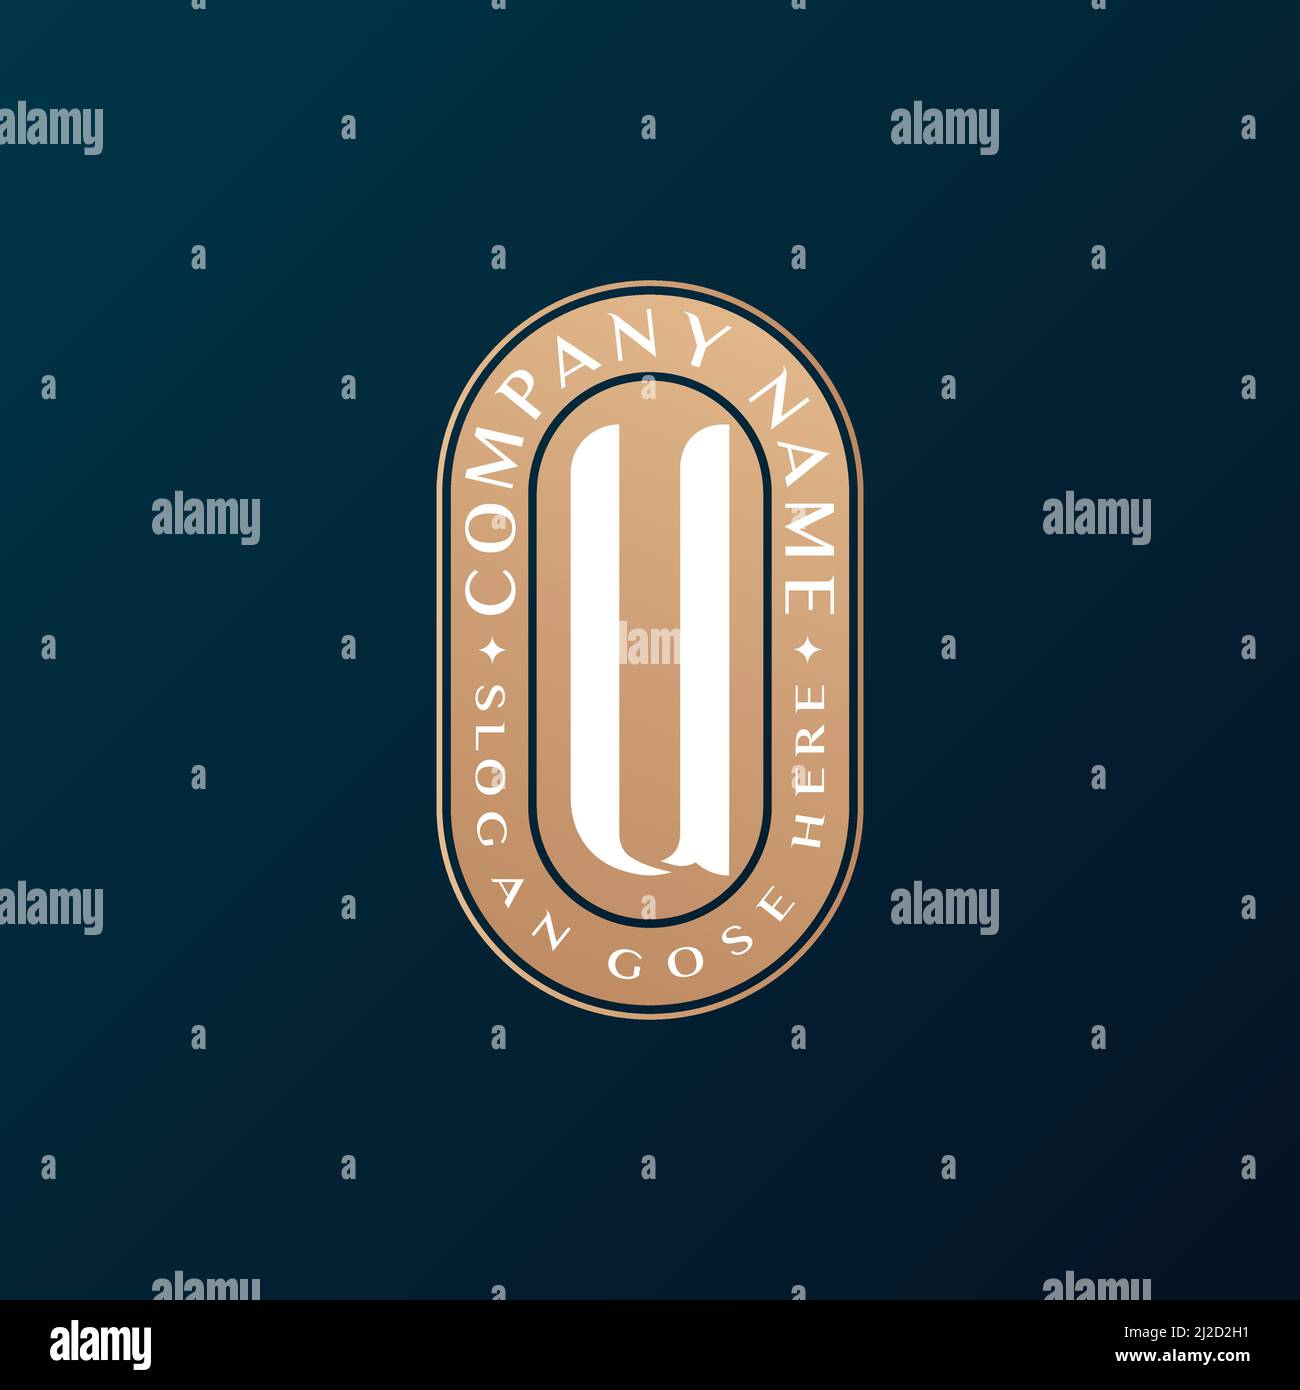 Abstrait Emblem Premium luxe identité d'entreprise élégant lettre U logo design Illustration de Vecteur